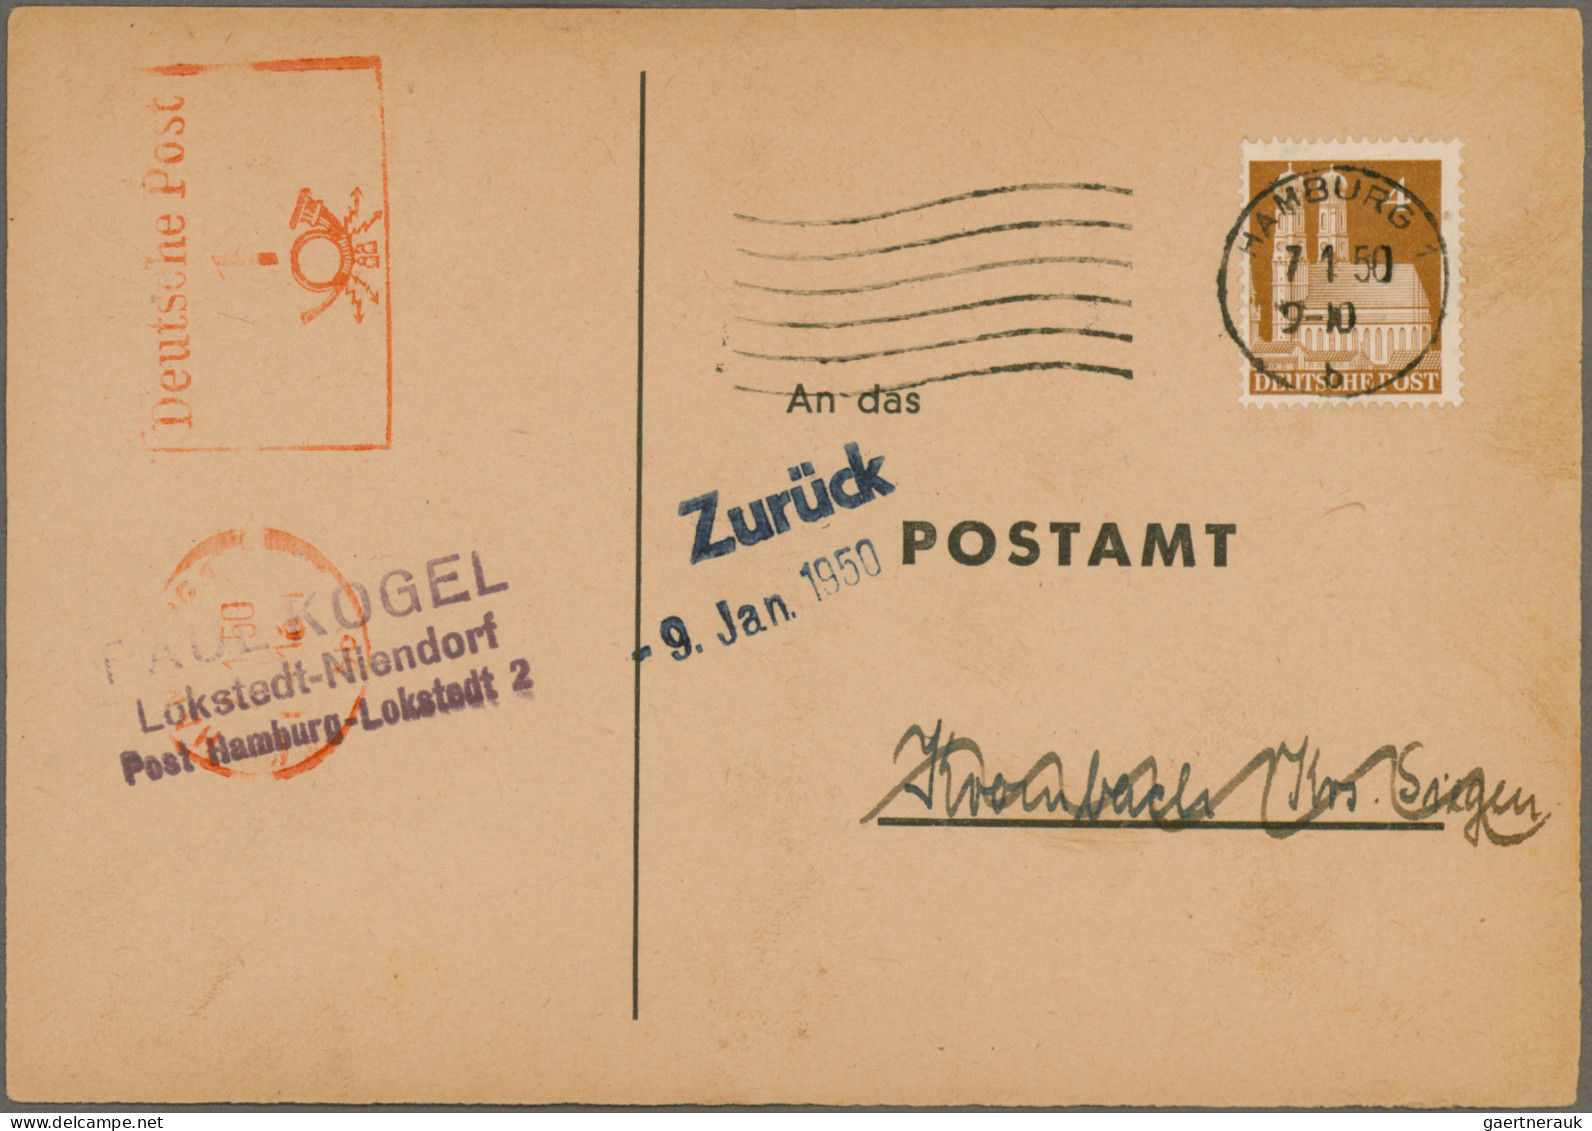 Bizone: 1948/1952, Bauten, saubere Sammlung von 61 Briefen und Karten in netter